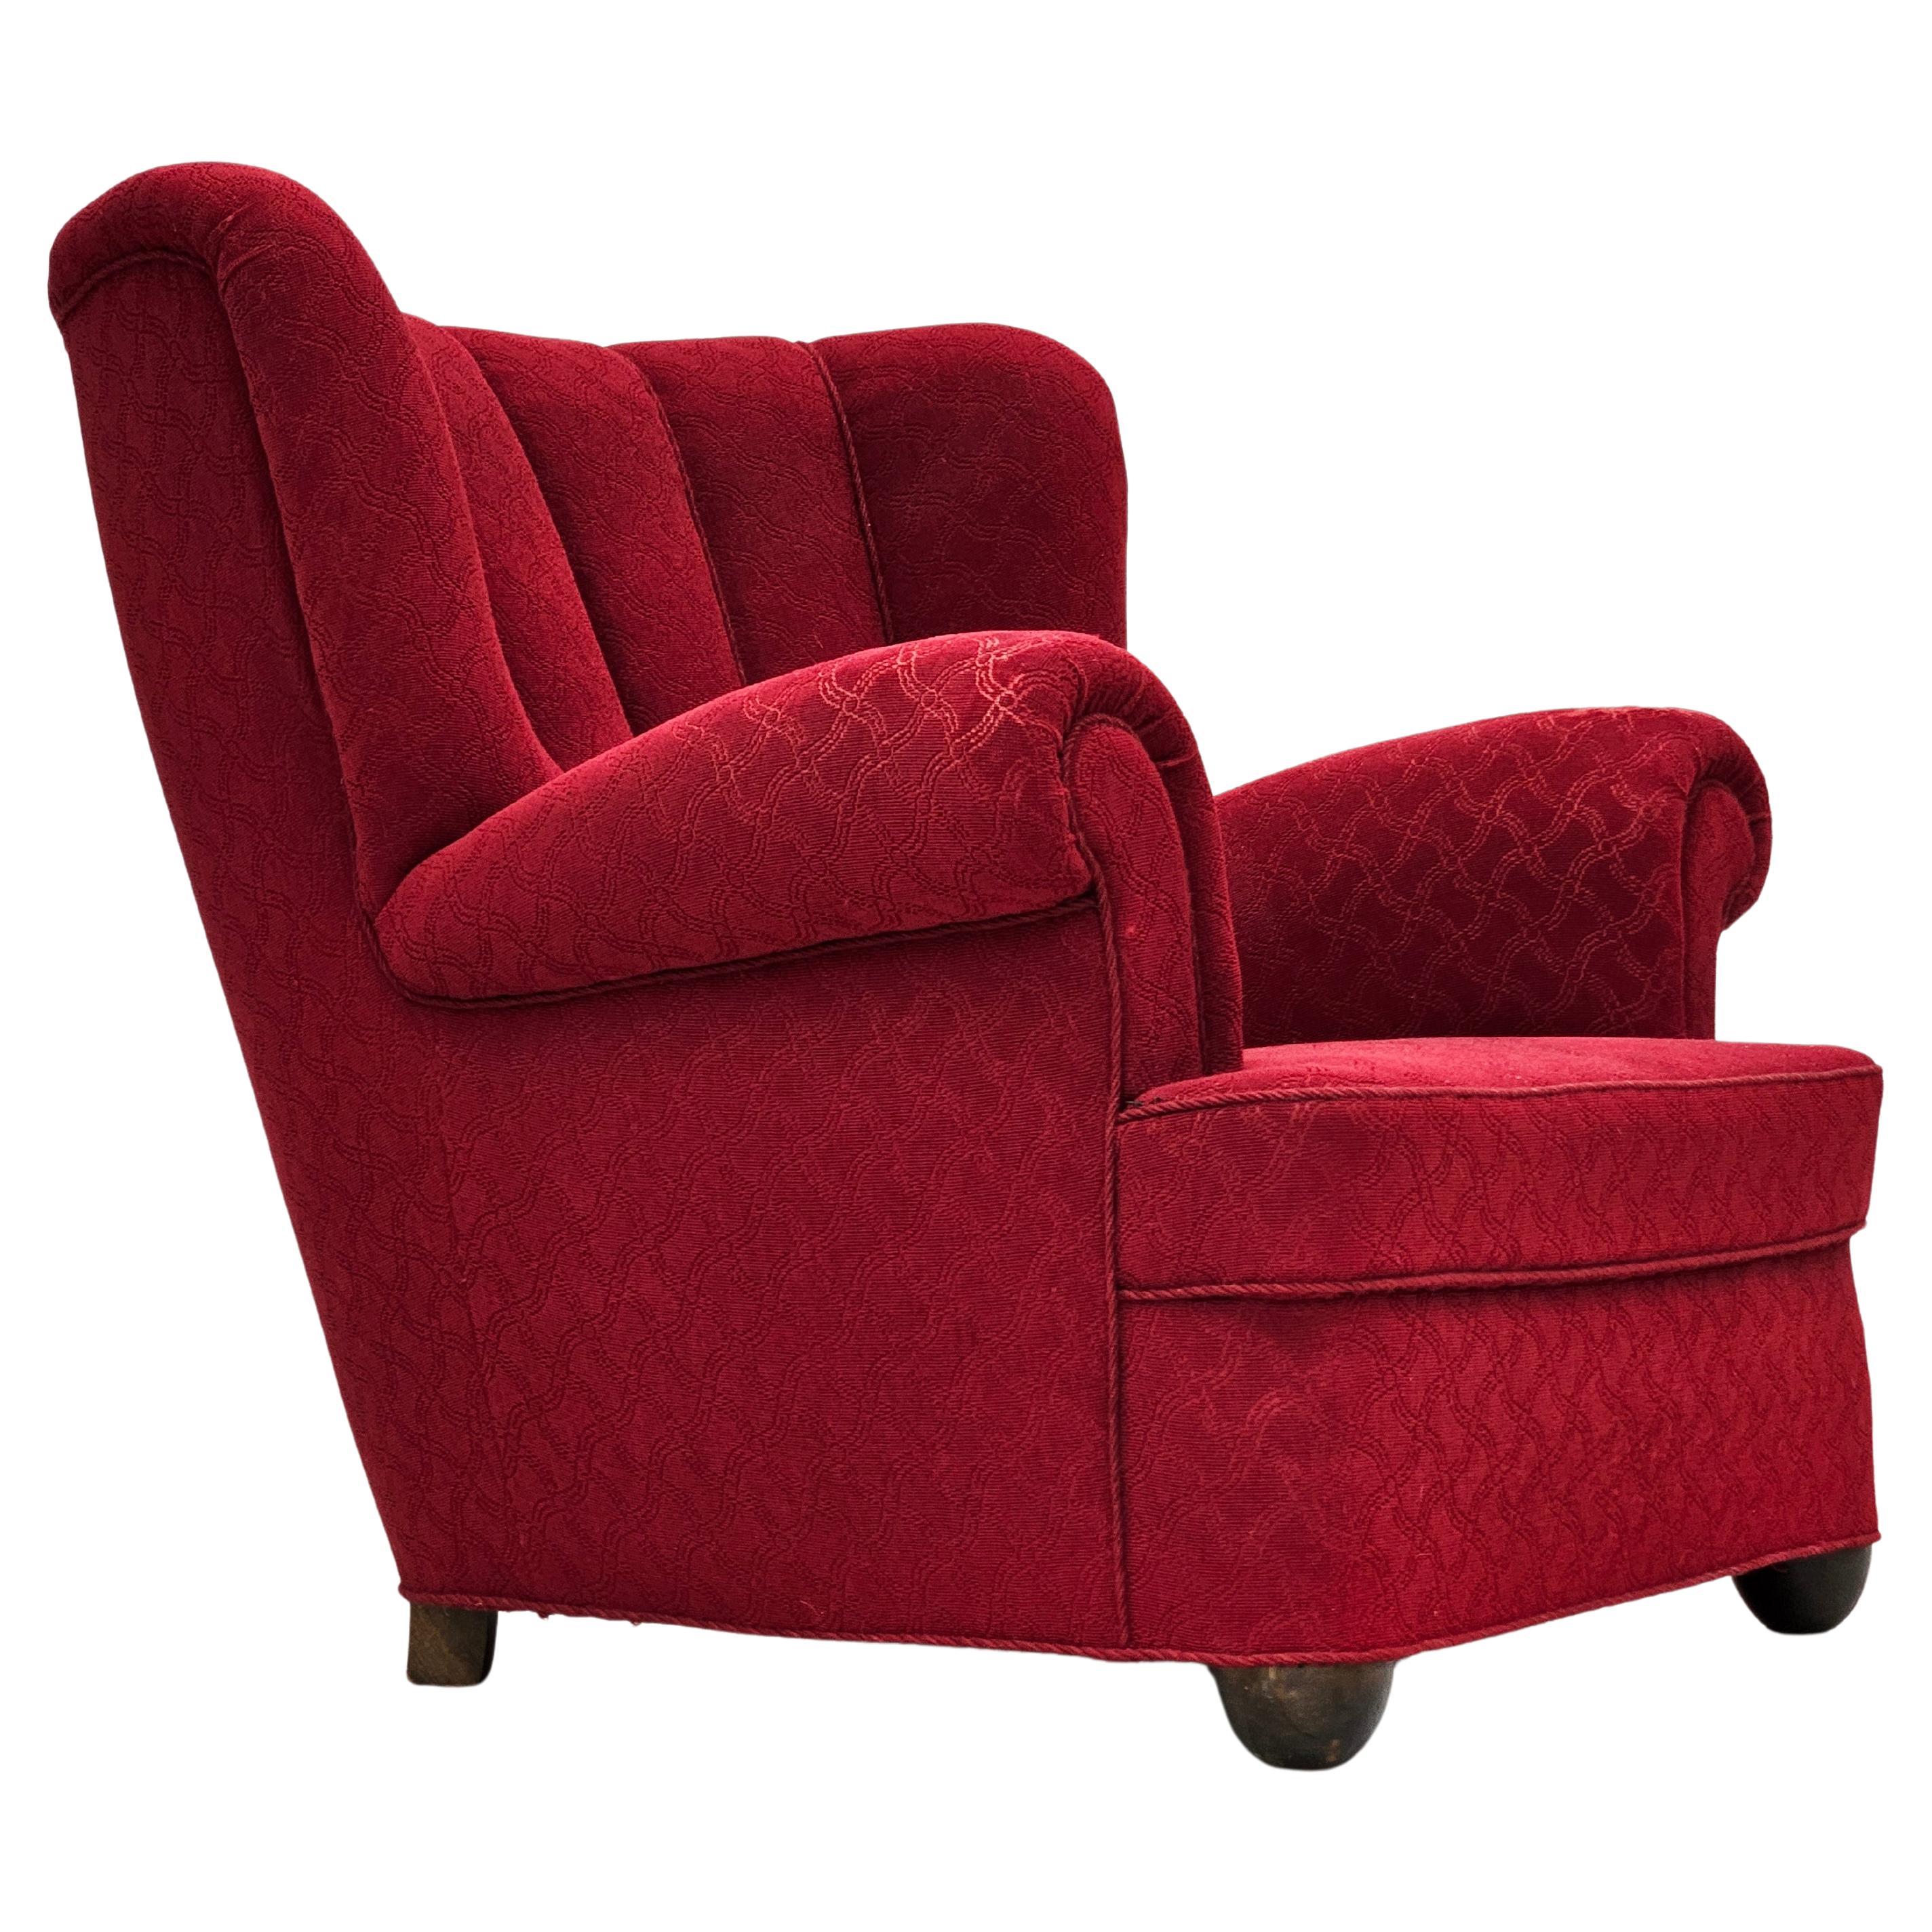 1960s, fauteuil relax danois, état original, coton/laine rouge, bois de chêne. en vente